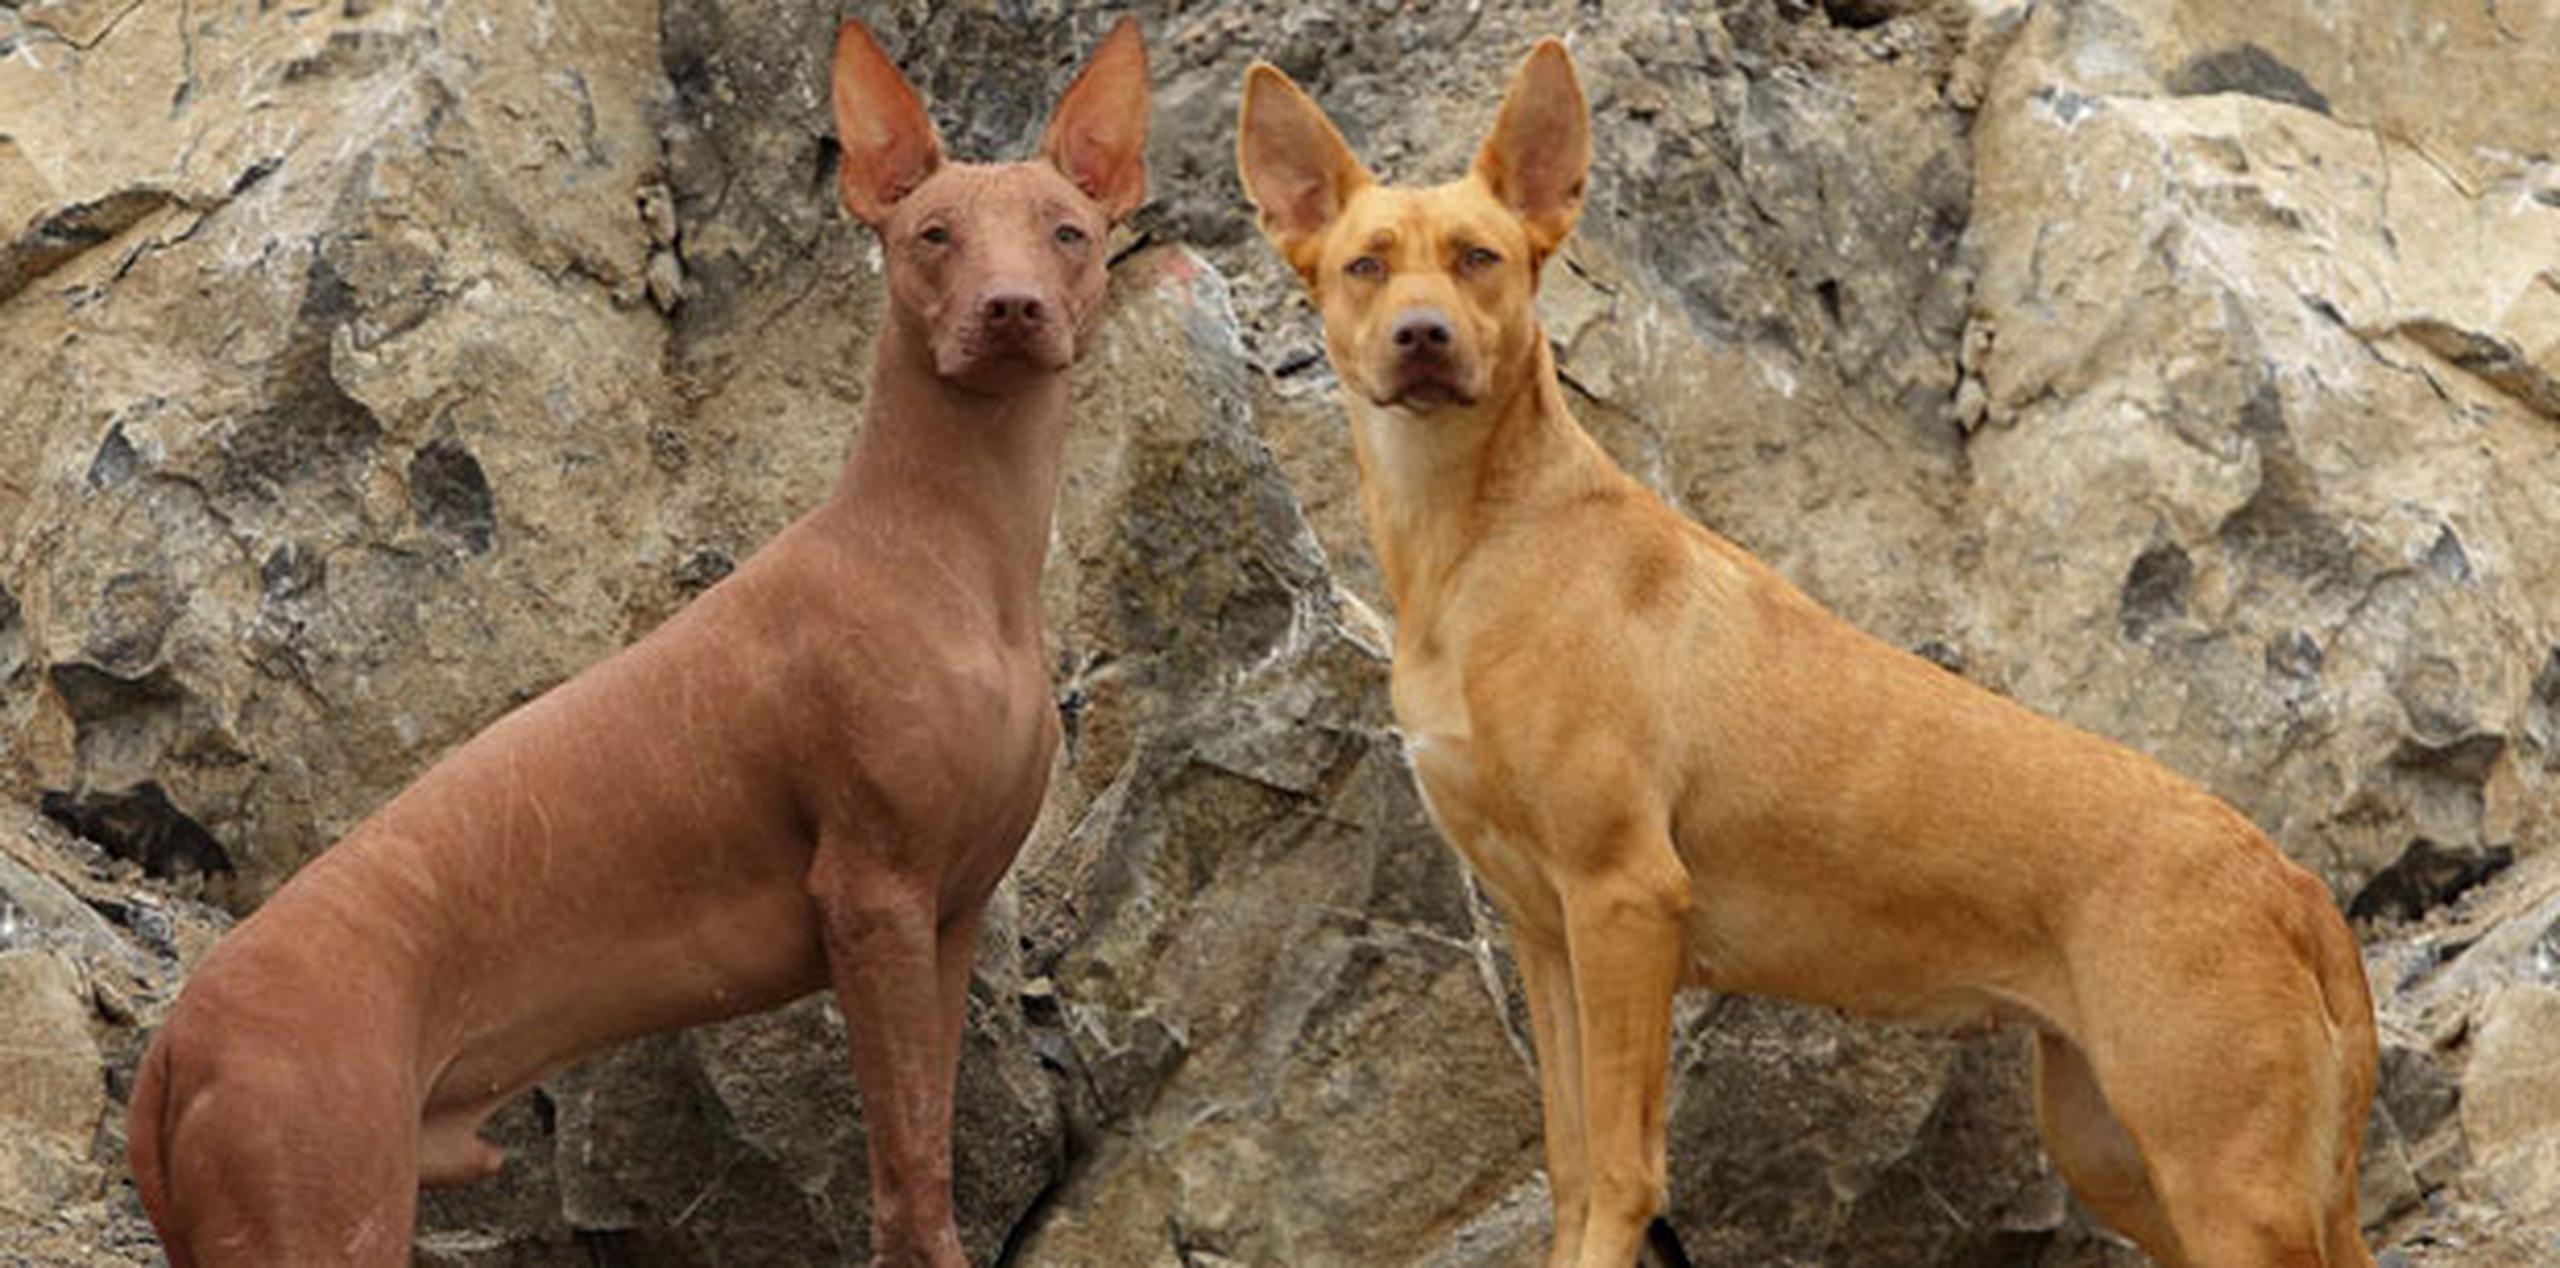 La carencia de pelo en el animal peruano, que hace que se le conozca popularmente como "perro calato" (desnudo), es un síndrome causado por la mutación del gen Foxi3. (EFE)